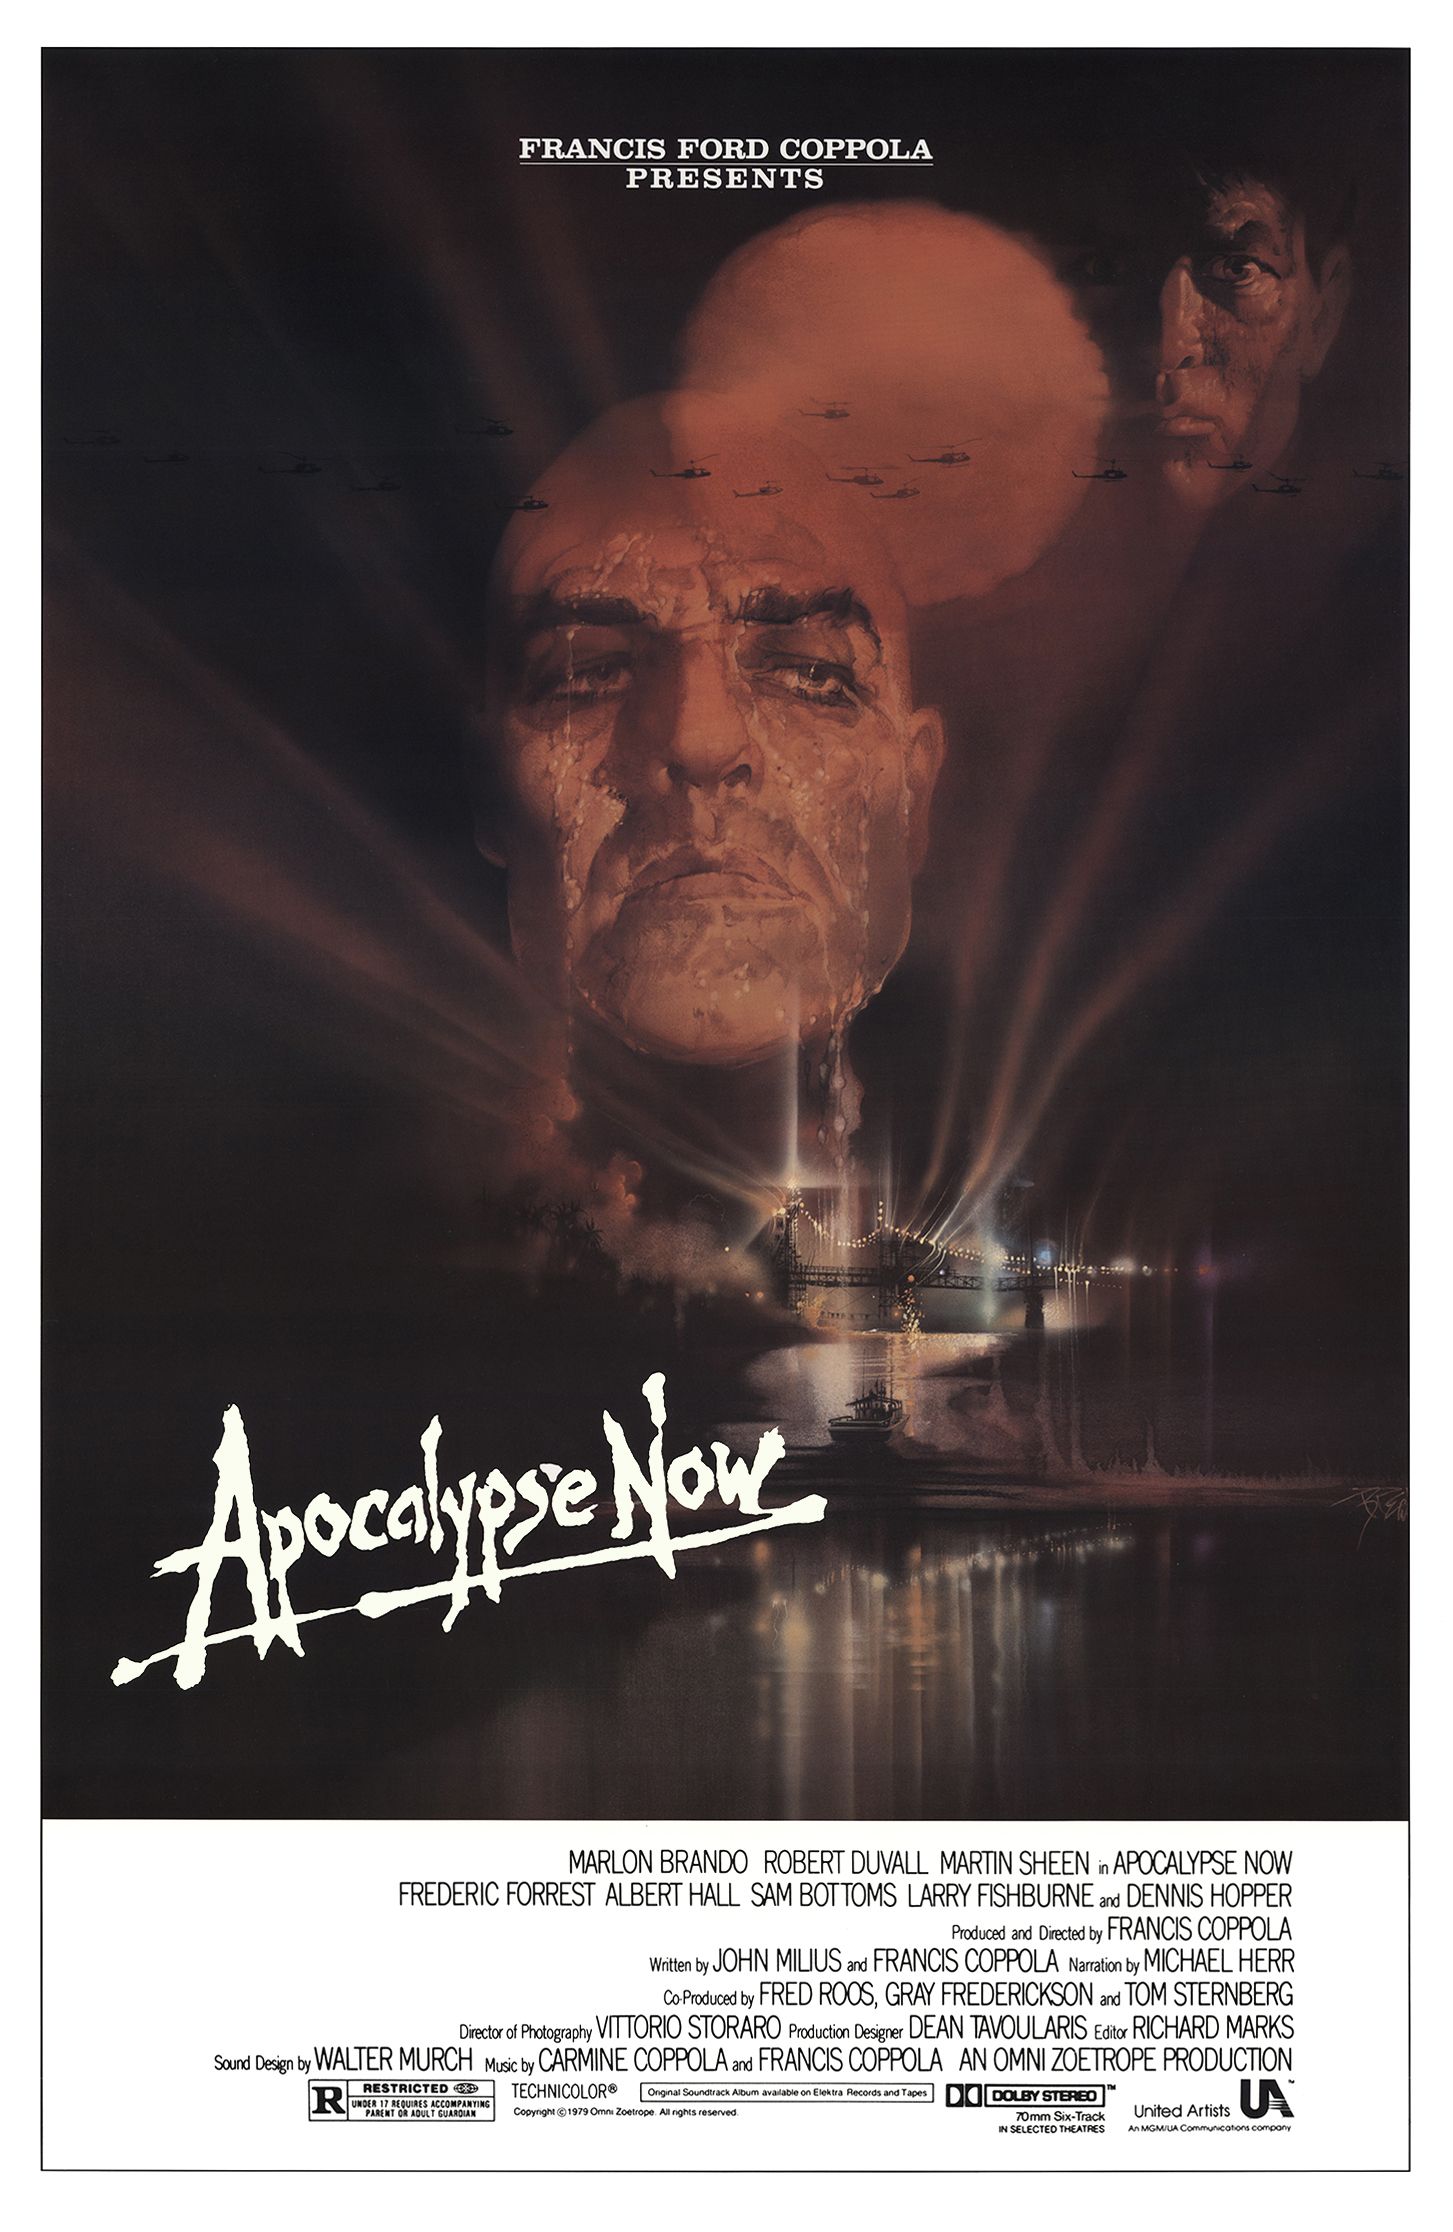 Affiche du film Apocalypse Now